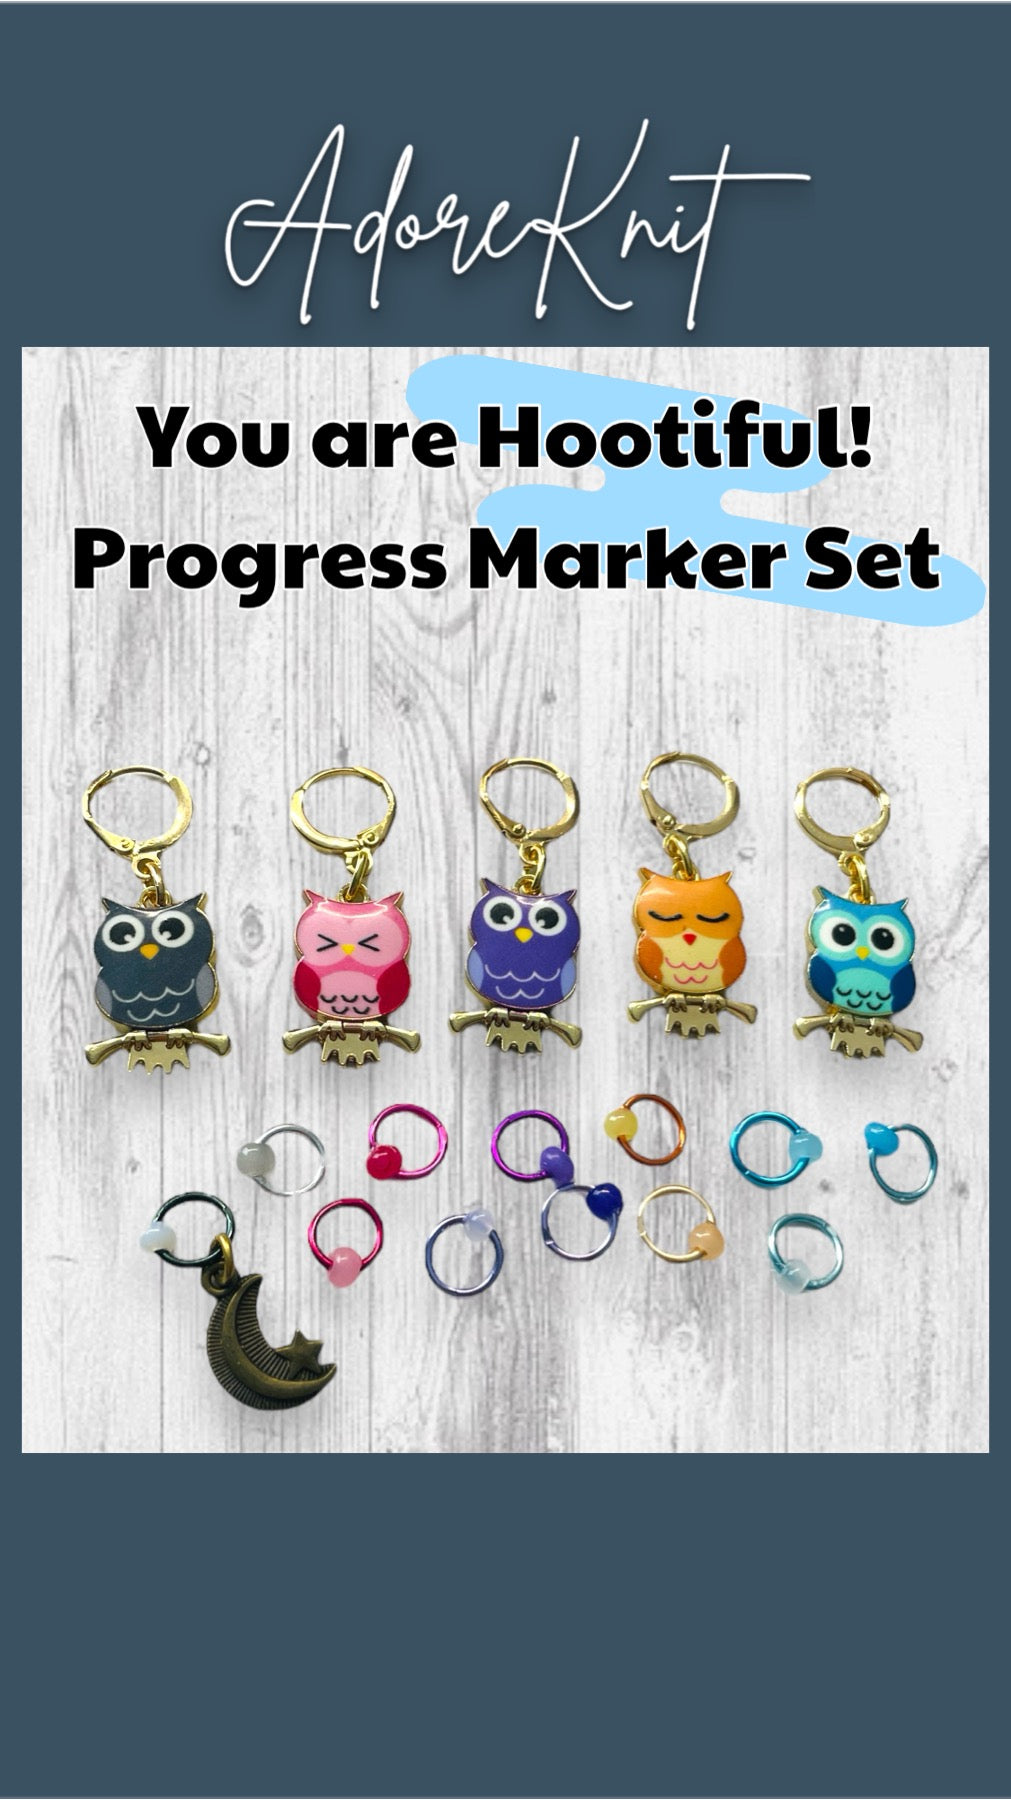 You are Hootiful! Progress Marker Set - AdoreKnit